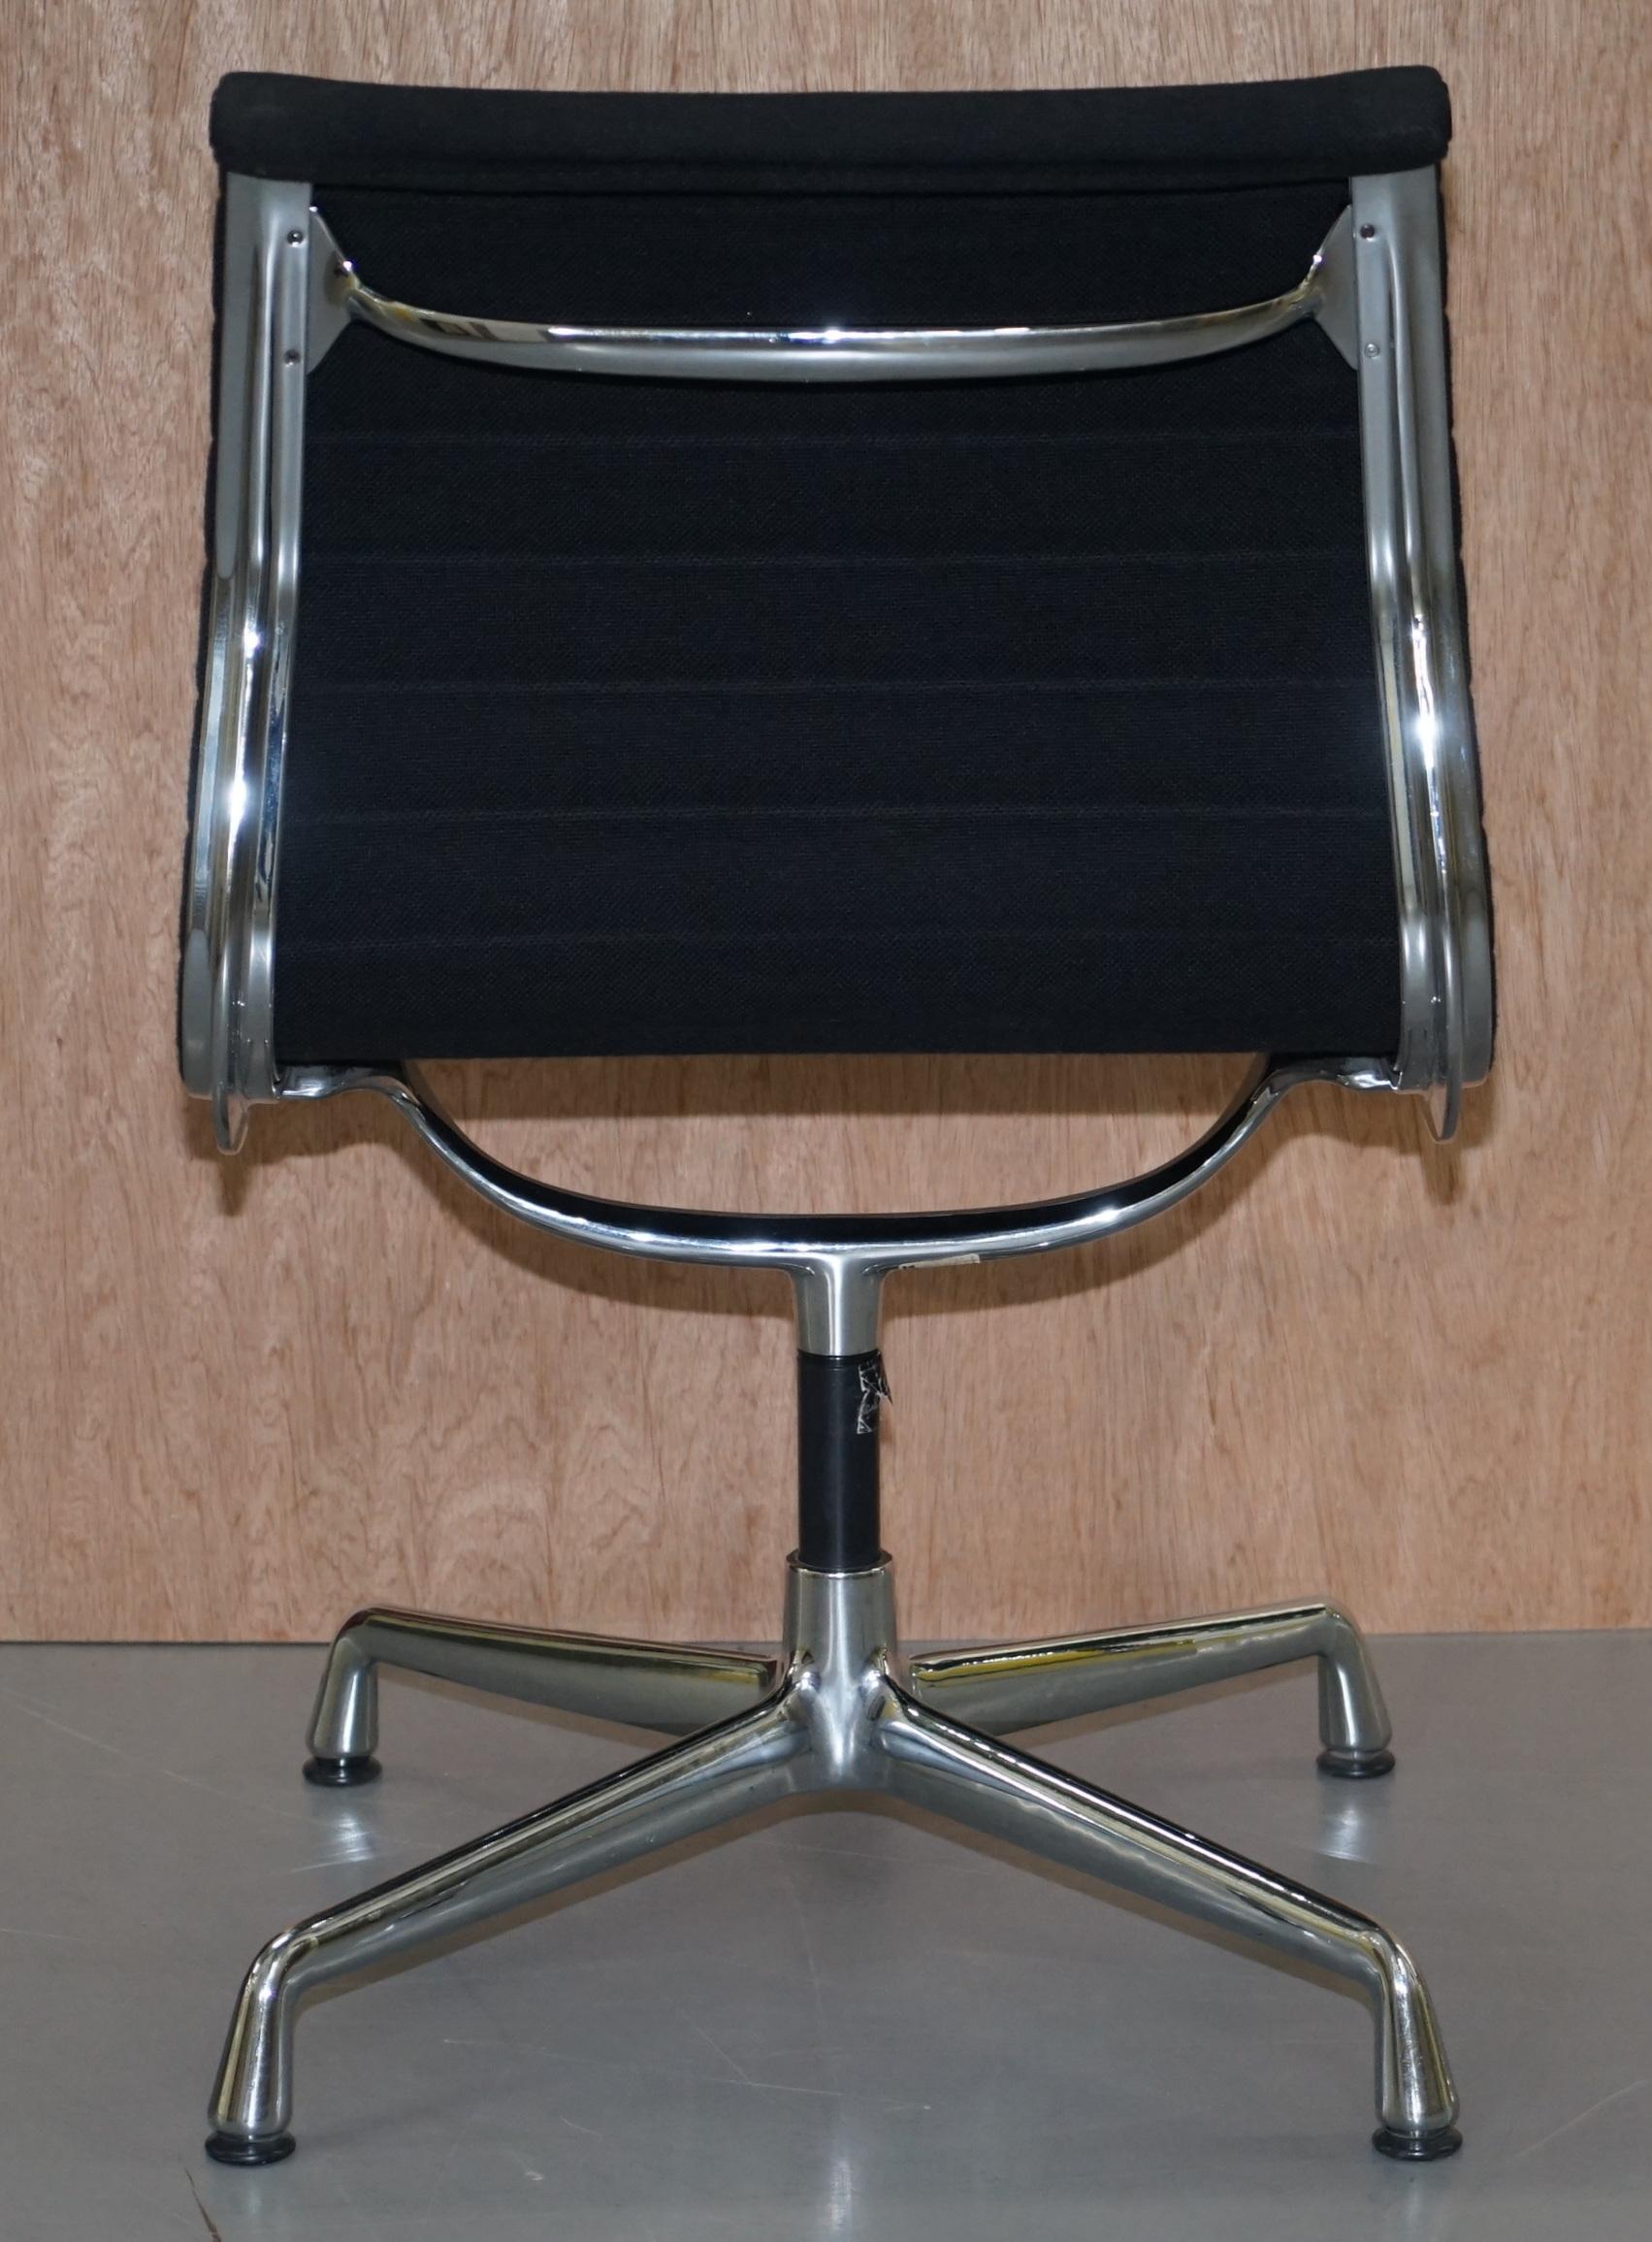 1 of 2 Original Vitra Eames Each EA 105 Hopsak Swivel Office Chairs 1